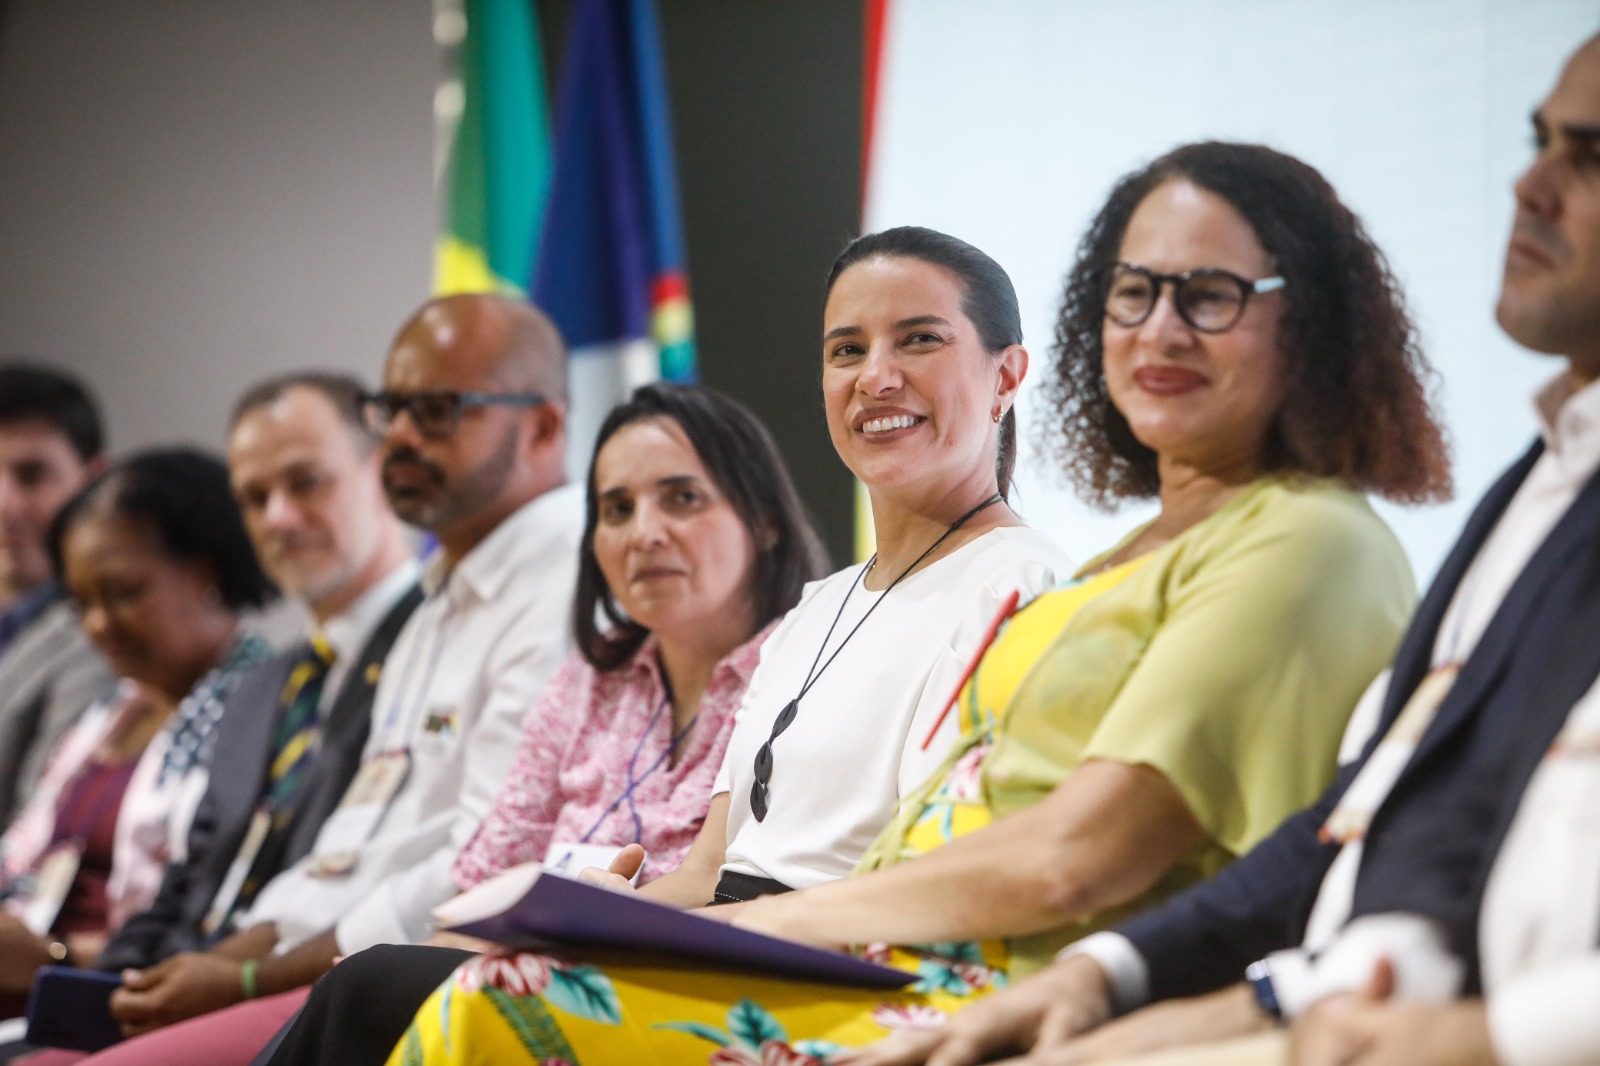  Governadora Raquel Lyra destaca potencial científico e inovador de Pernambuco na Conferência de Ciência e Tecnologia